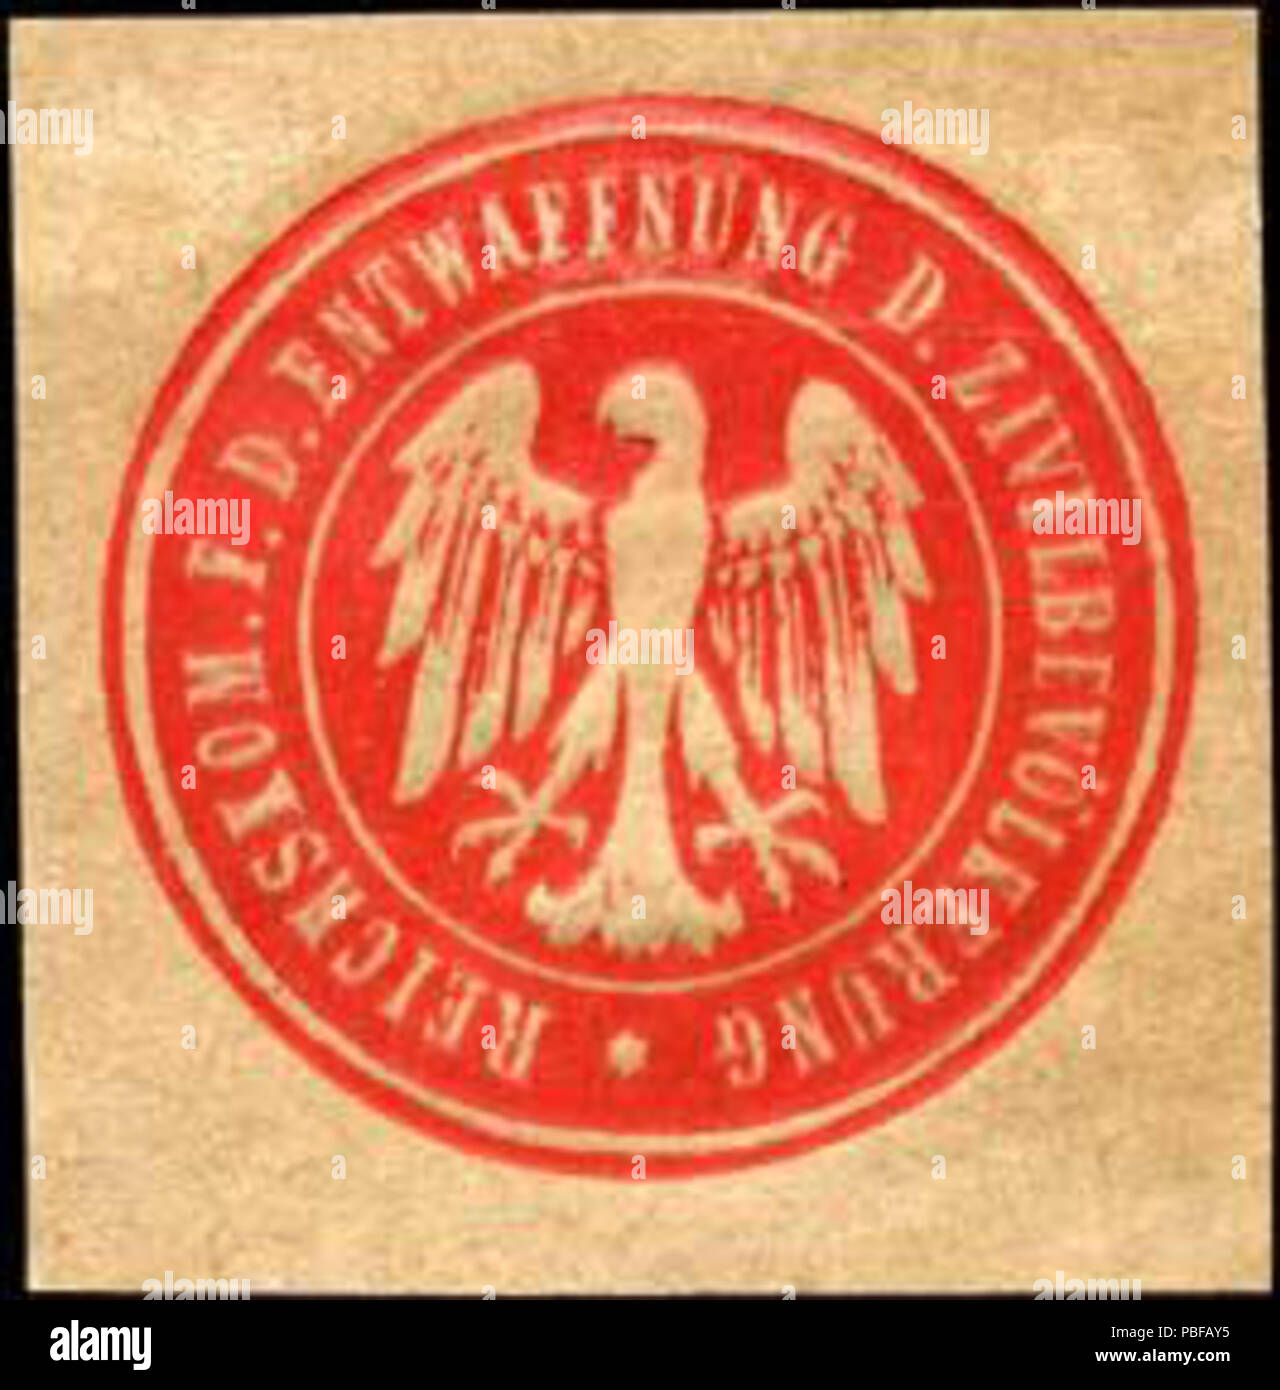 Alte Briefverschlussmarke aus Papier, welche seit ca. 1850 von Behoerden, Anwaelten, Notaren und Firmen zum verschliessen der Post verwendet wurde. 1501 Siegelmarke Reichskommission für die Entwaffnung der Zivilbevölkerung W0237563 Foto Stock